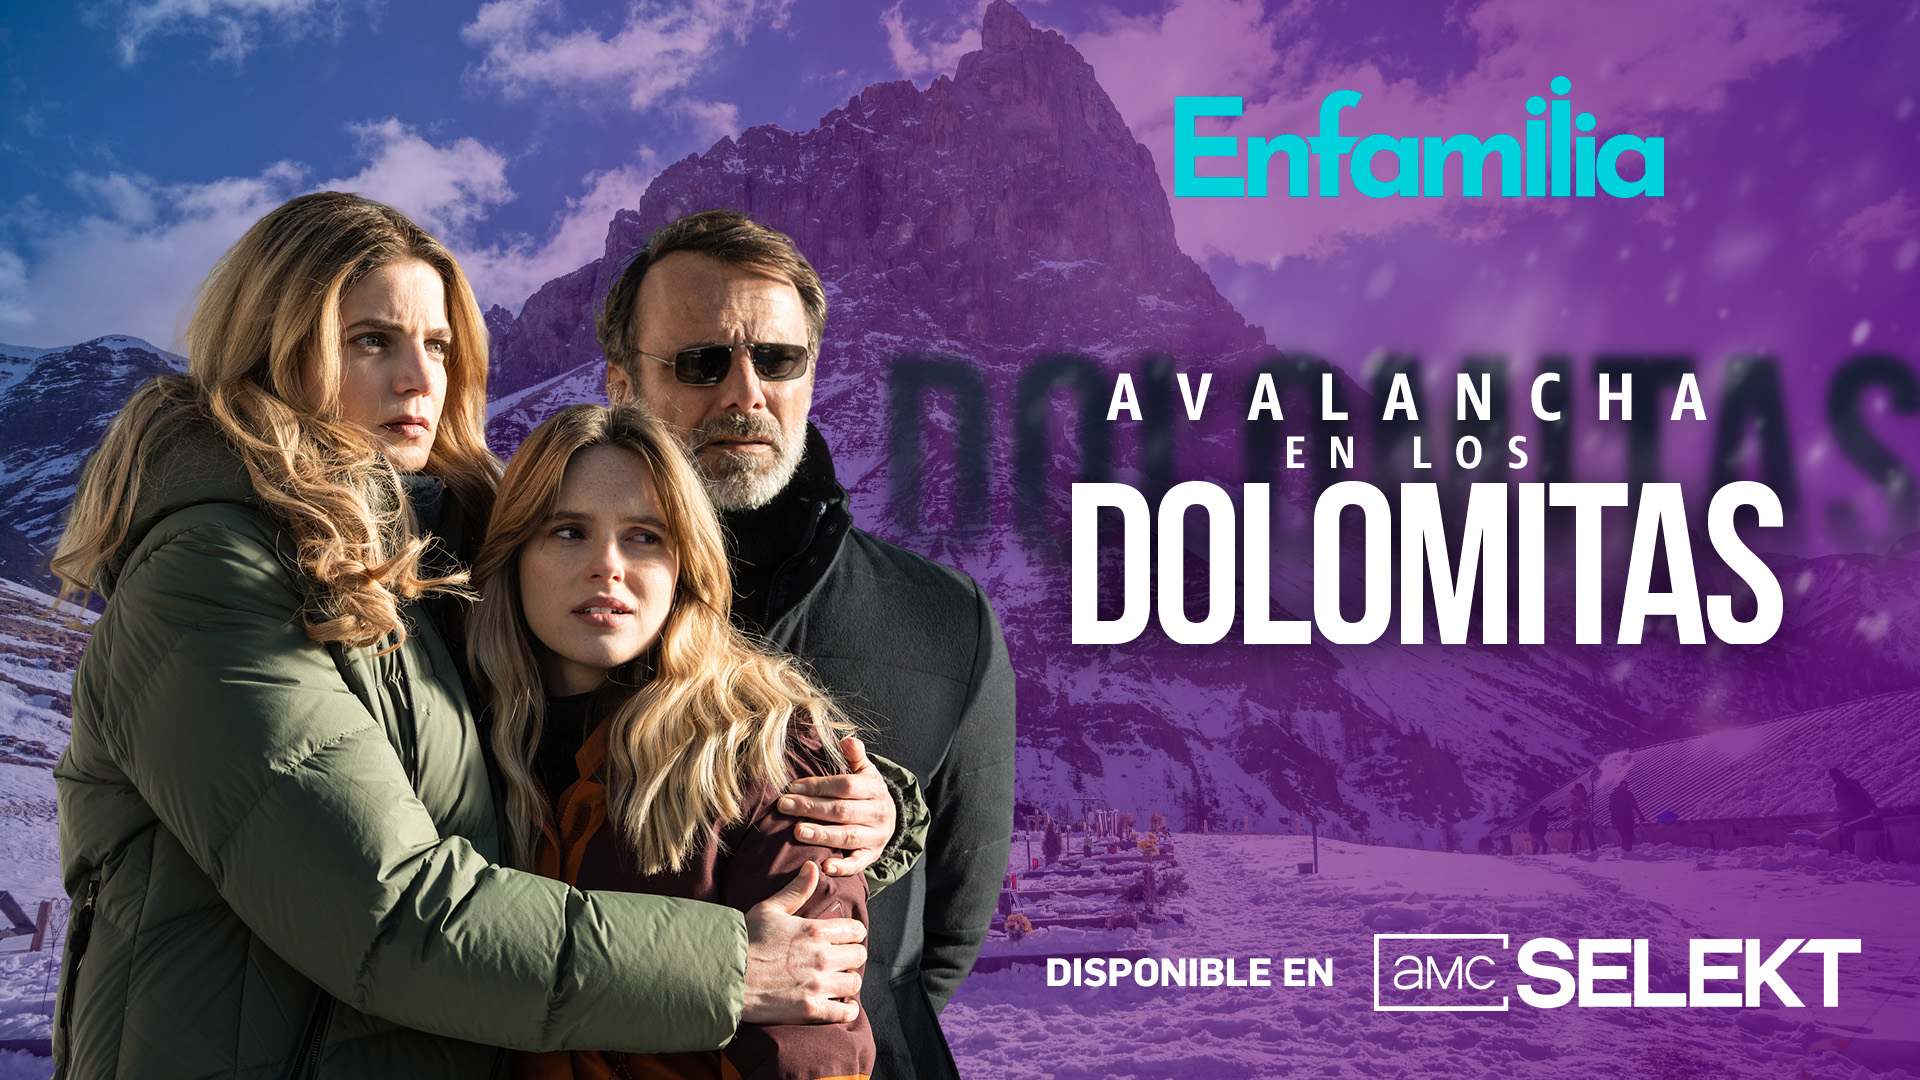 El canal de televisión Enfamilia pone a prueba los nervios del espectador con el estreno en exclusiva de ‘Avalancha en los Dolomitas’